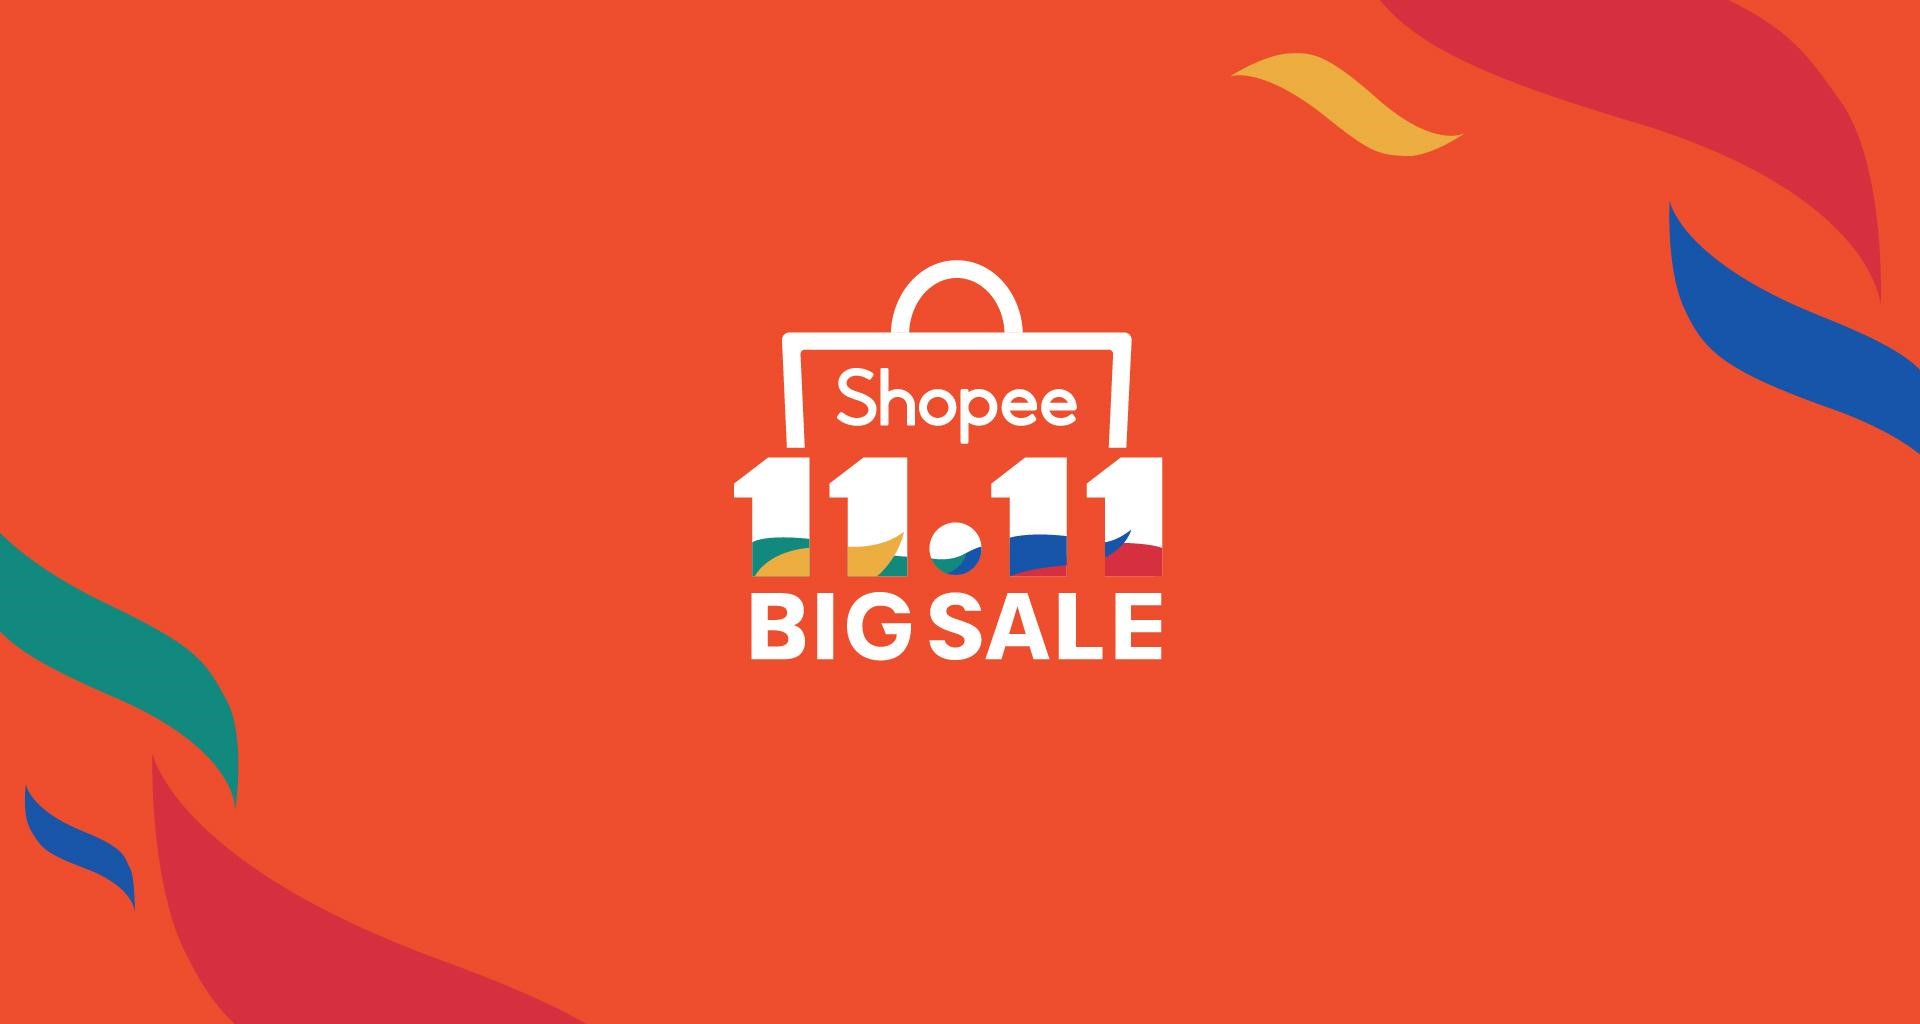 Ảnh Shopee 11.11 Shopee 11.11 Siêu Sale chính thức trở lại, sự kiện mua sắm lớn nhất 11.11 từ trước đến nay